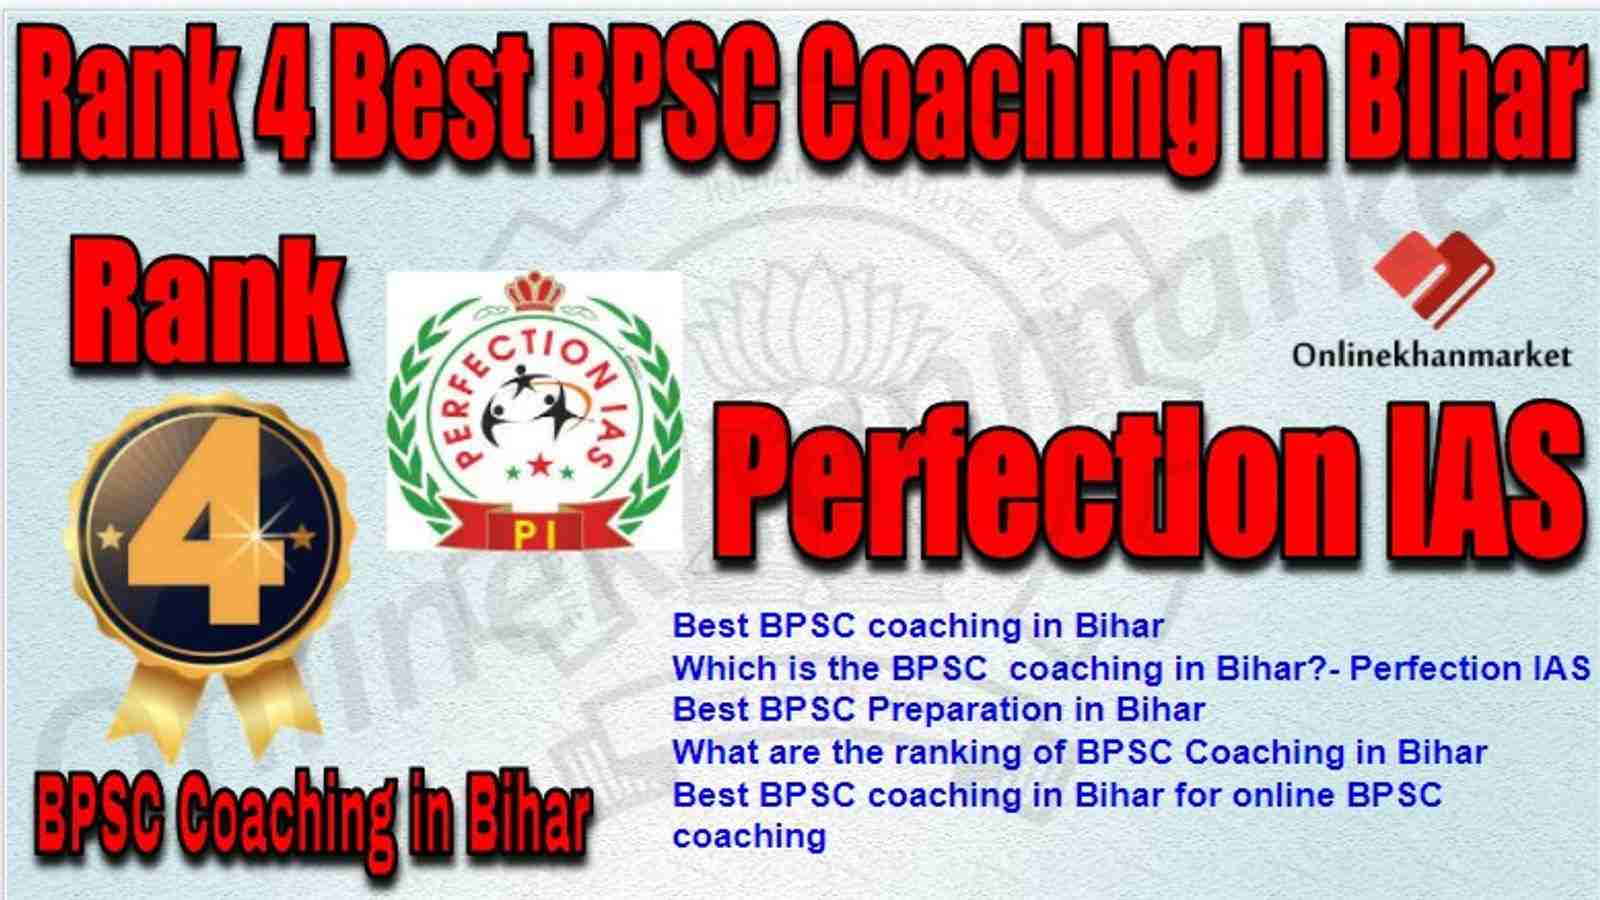 Rank 4 Best BPSC Coaching in bihar